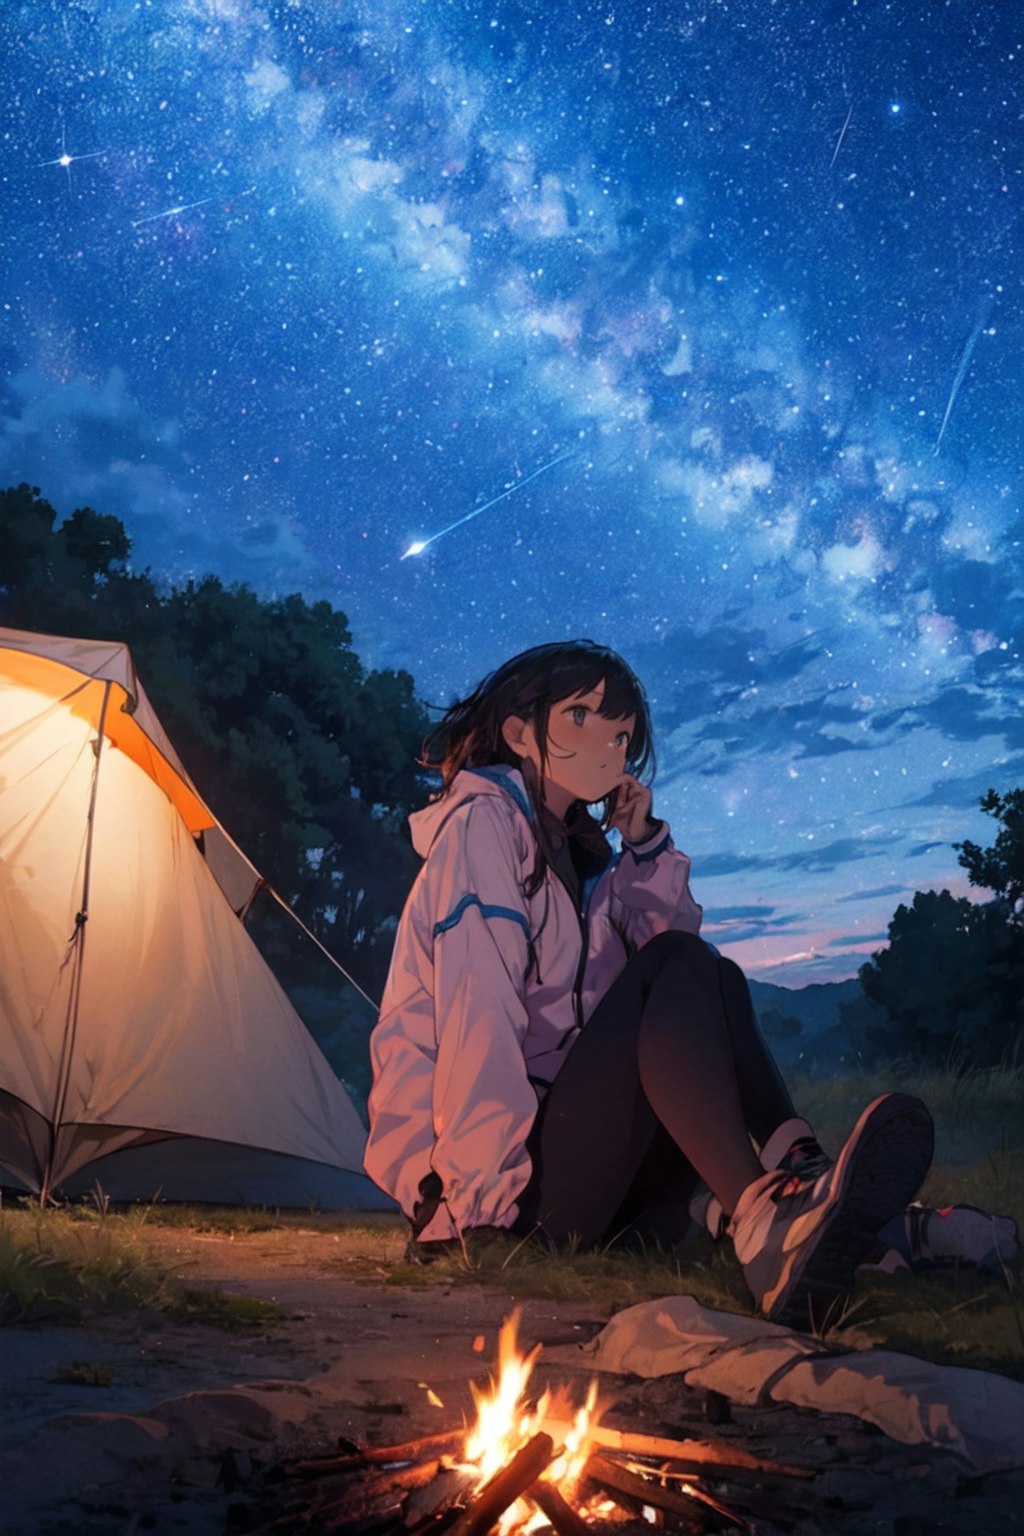 星見のキャンプ